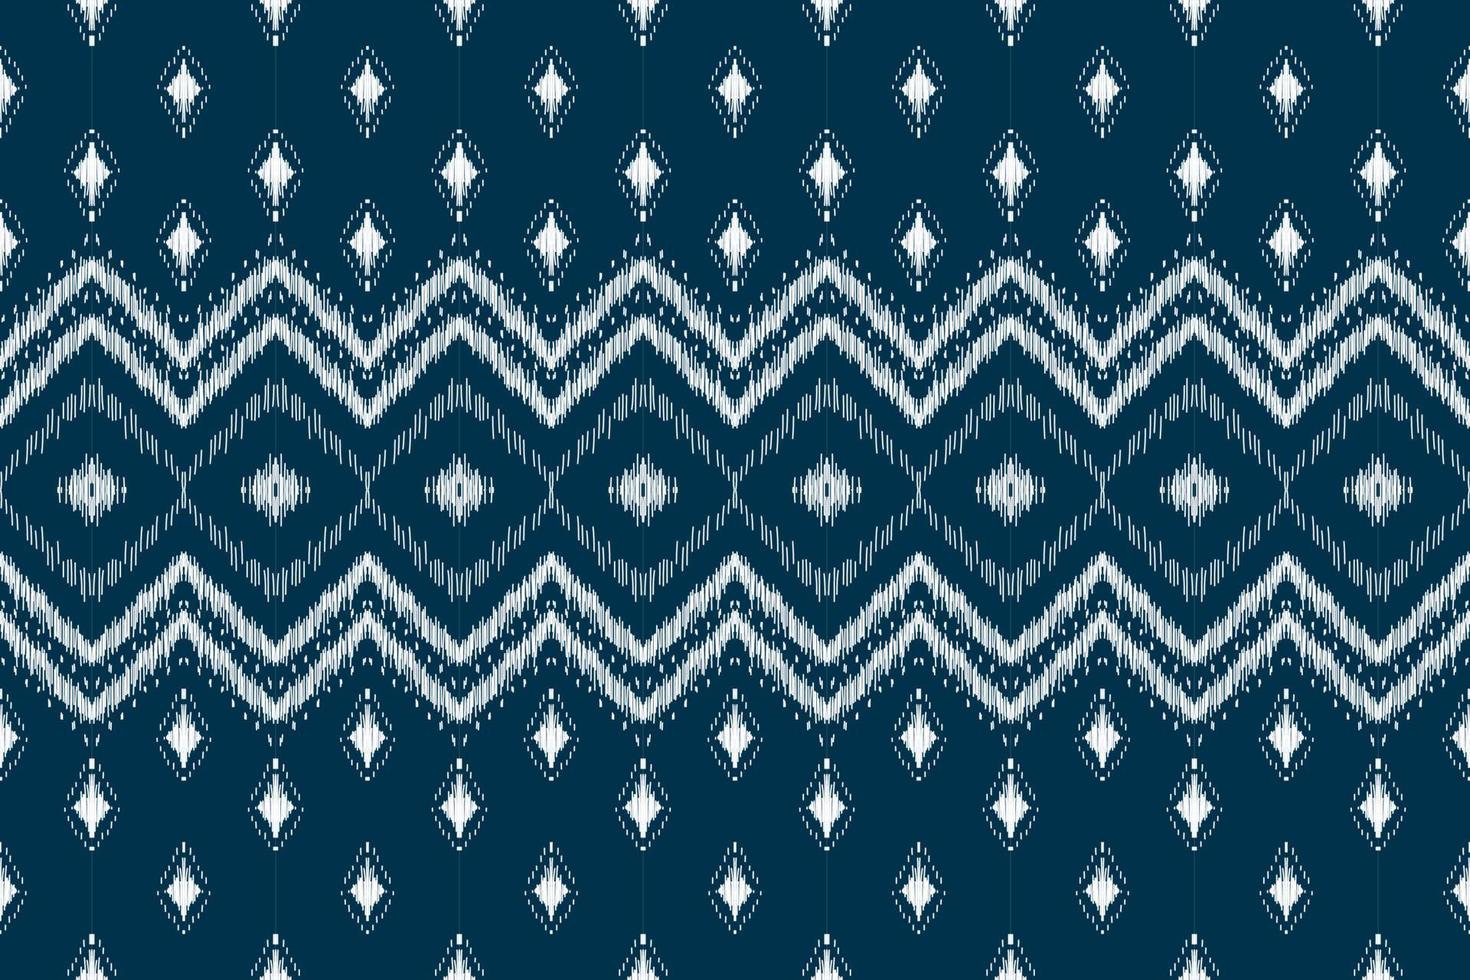 arte de patrón étnico de alfombras. patrón sin costuras étnico ikat en tribal. vector